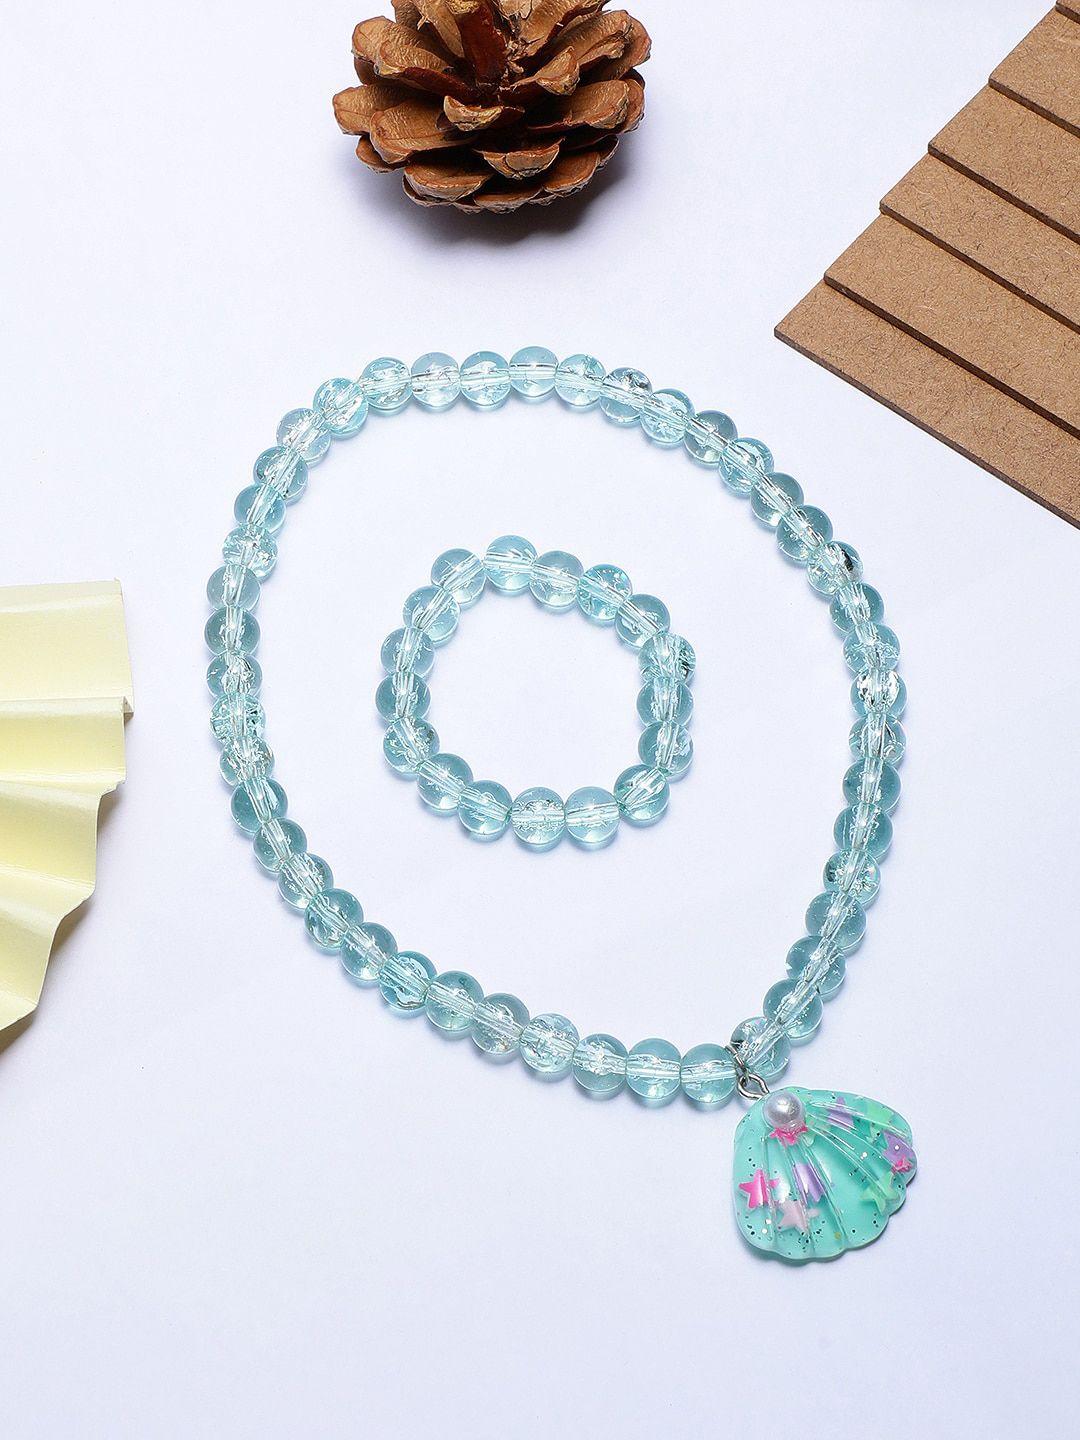 el regalo girls necklace and bracelet set